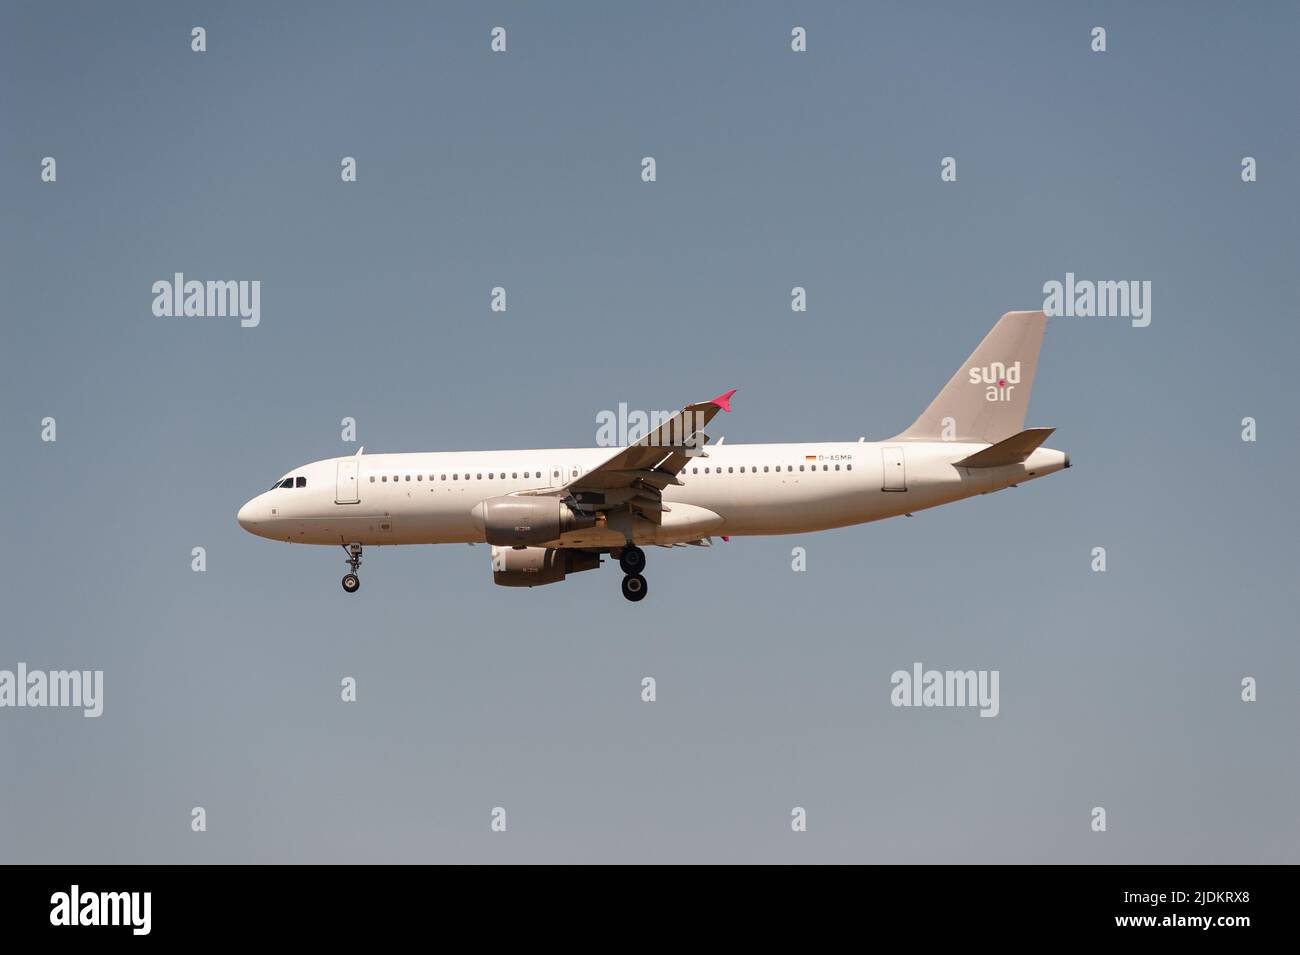 18.06.2022, Berlin, Allemagne, Europe - Un Airbus Sundair A320-200 s'approche de l'aéroport de Brandebourg de Berlin BER pour atterrir. Banque D'Images